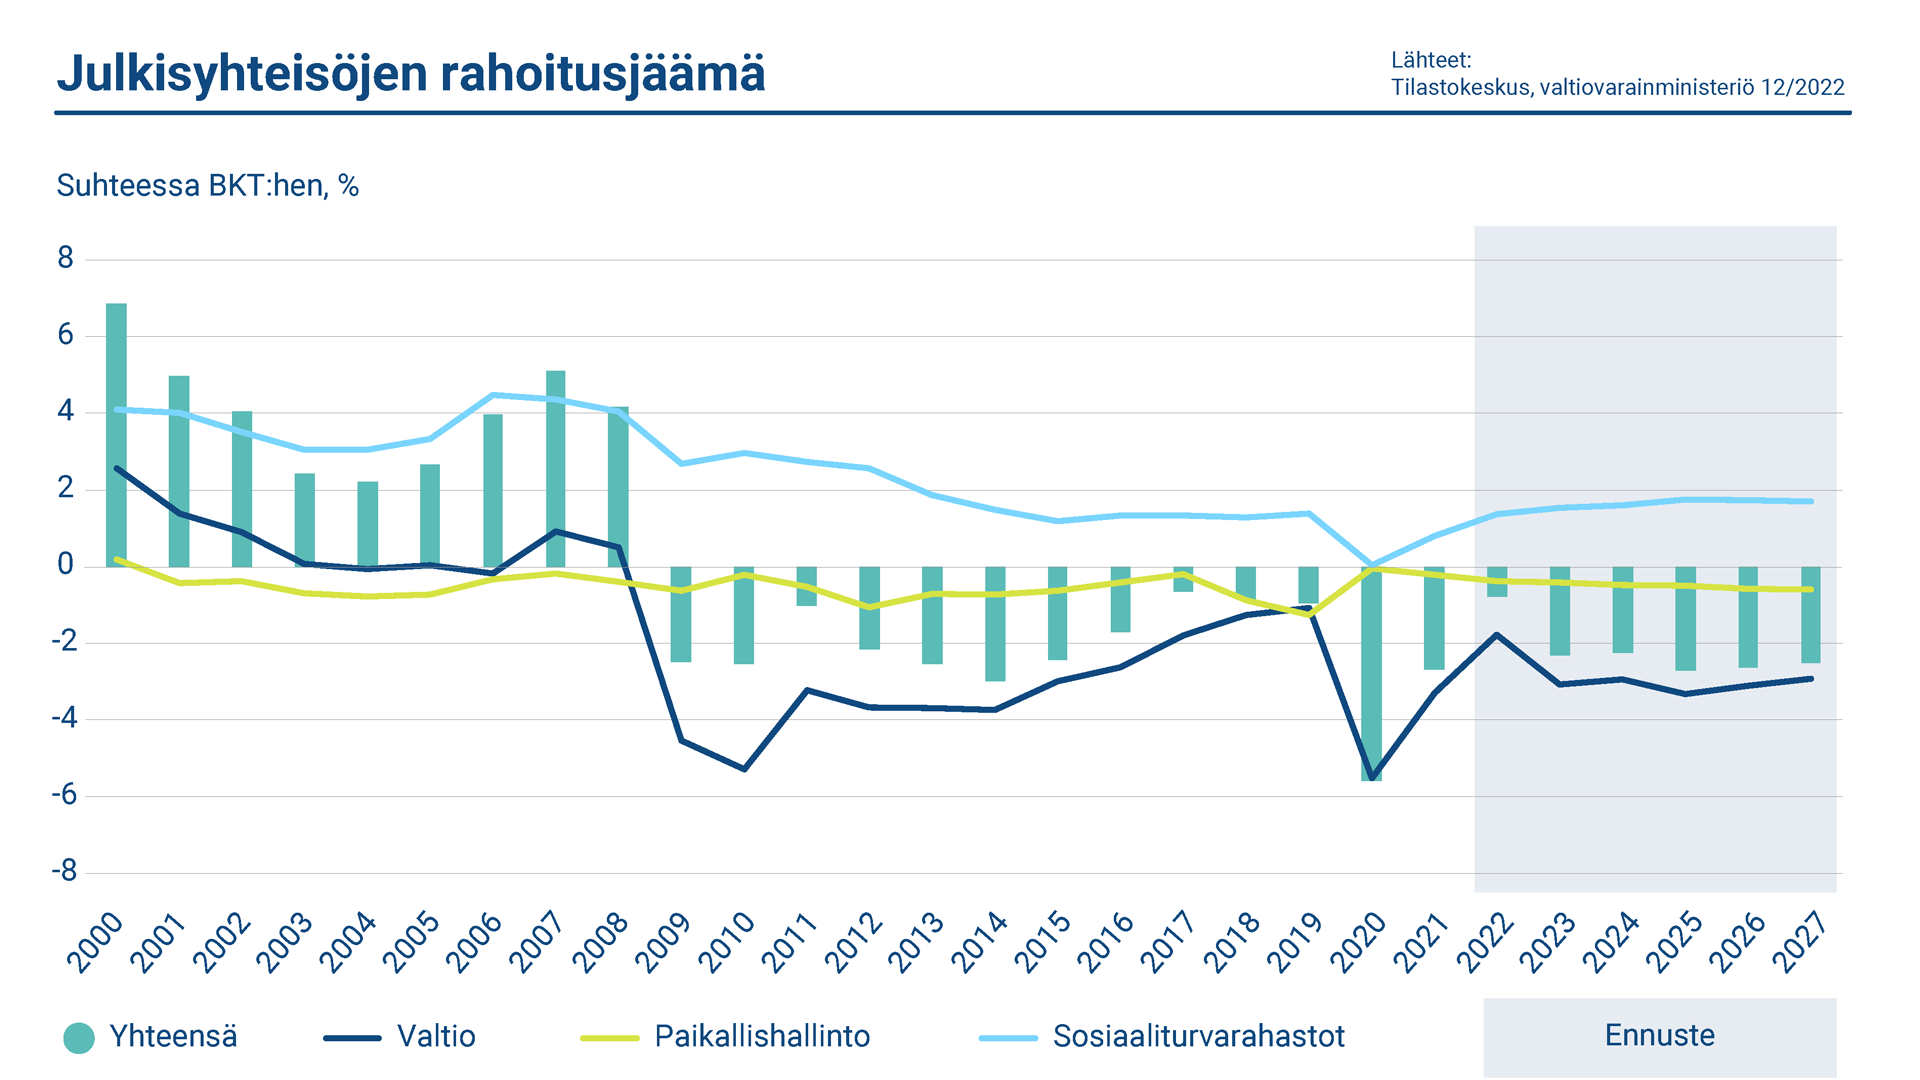 Kaaviossa esitetään Suomen julkisyhteisöjen rahoitusjäämä. Sosiaaliturvarahastot ovat ylijäämäisiä, mutta valtionhallinto ja paikallishallinto ovat alijäämäisiä.